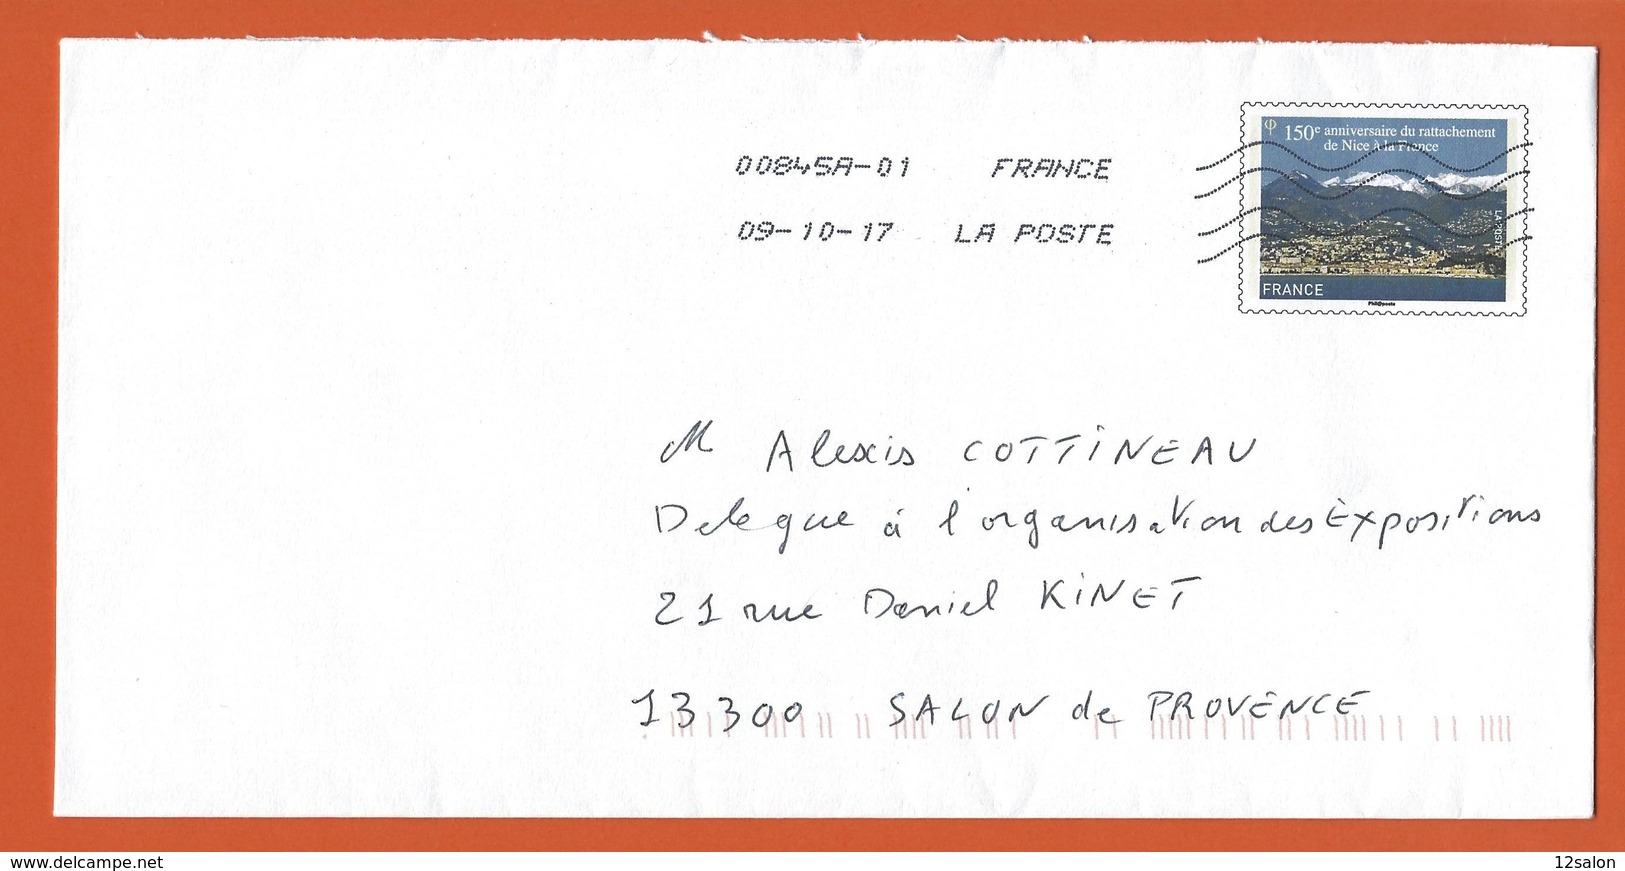 ENTIERS POSTAUX PRET A POSTER  Theme 150 ANNIVERSAIRE RATTACHEMENT DE NICE A LA FRANCE - PAP:  Varia (1995-...)